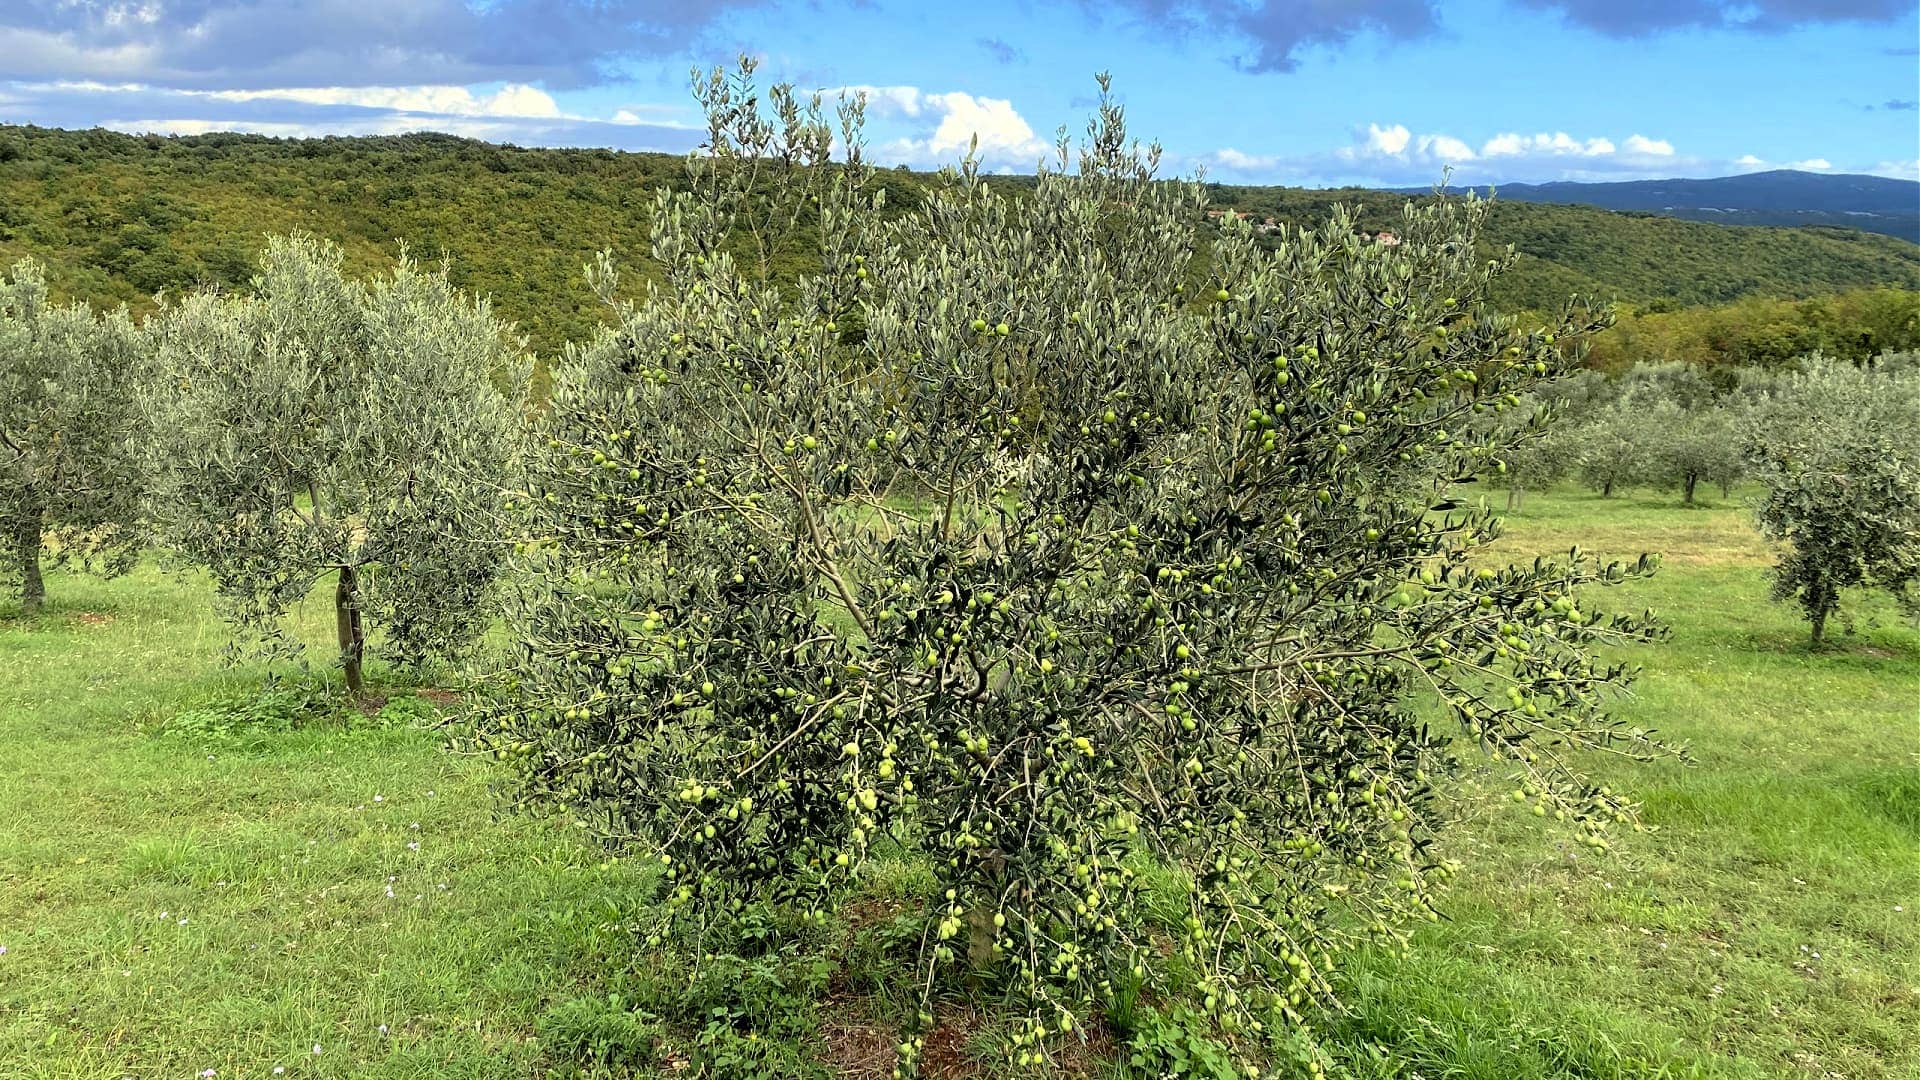 europe-profiles-the-best-olive-oils-production-how-the-climate-создает-и-сломает-один-отмеченные-награждение-производители-урожая-оливкового-времени-масла